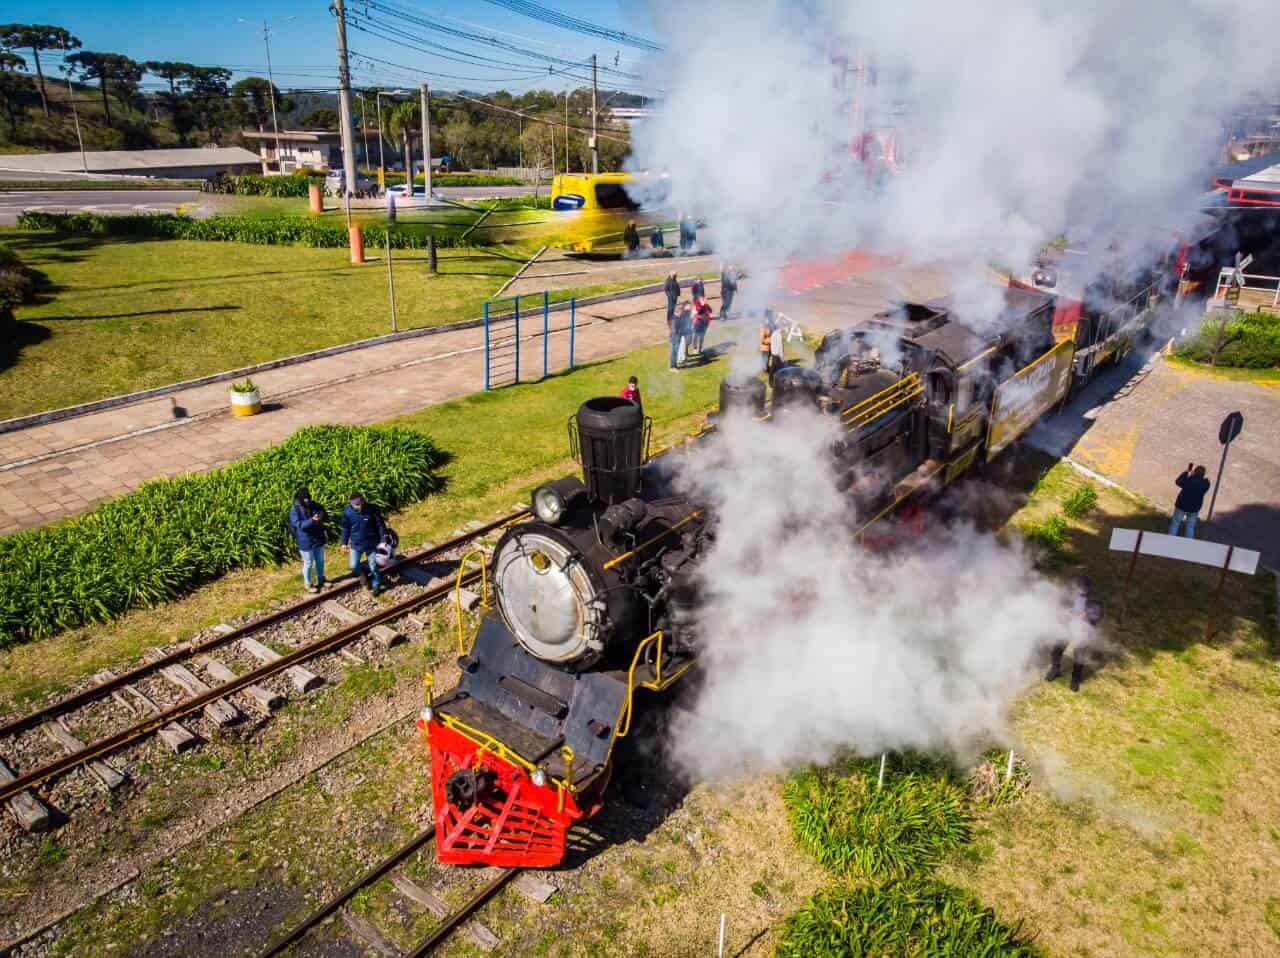 Maria-fumaça: passeios pelo Brasil em charmosas locomotivas | Maria-fumaça Serra Gaúcha | Conexão123